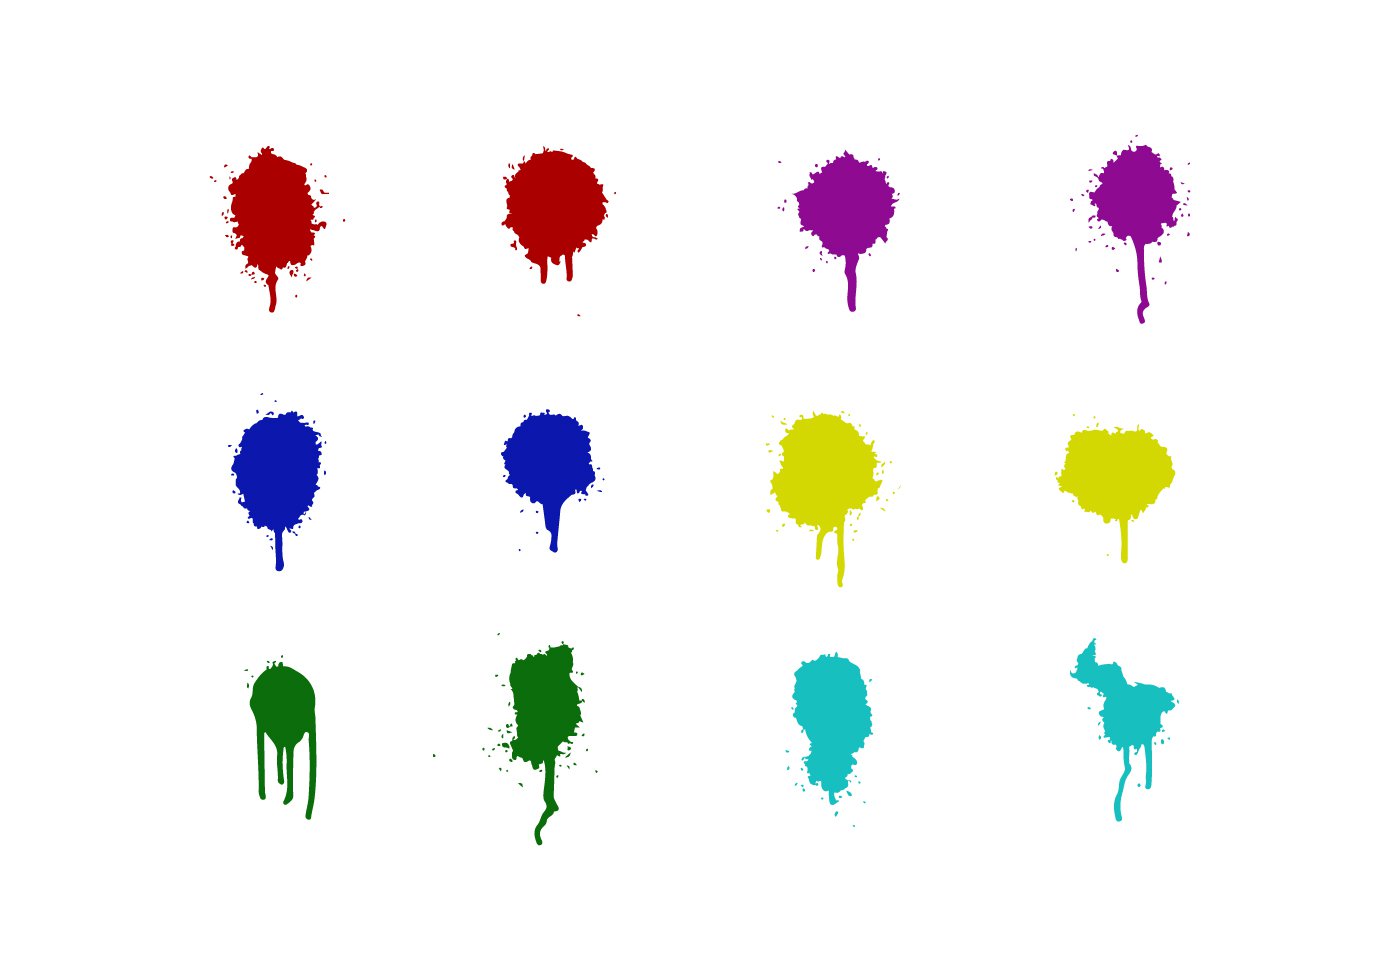 Spray Paint Vectors - Download Free Vector Art, Stock Graphics ...